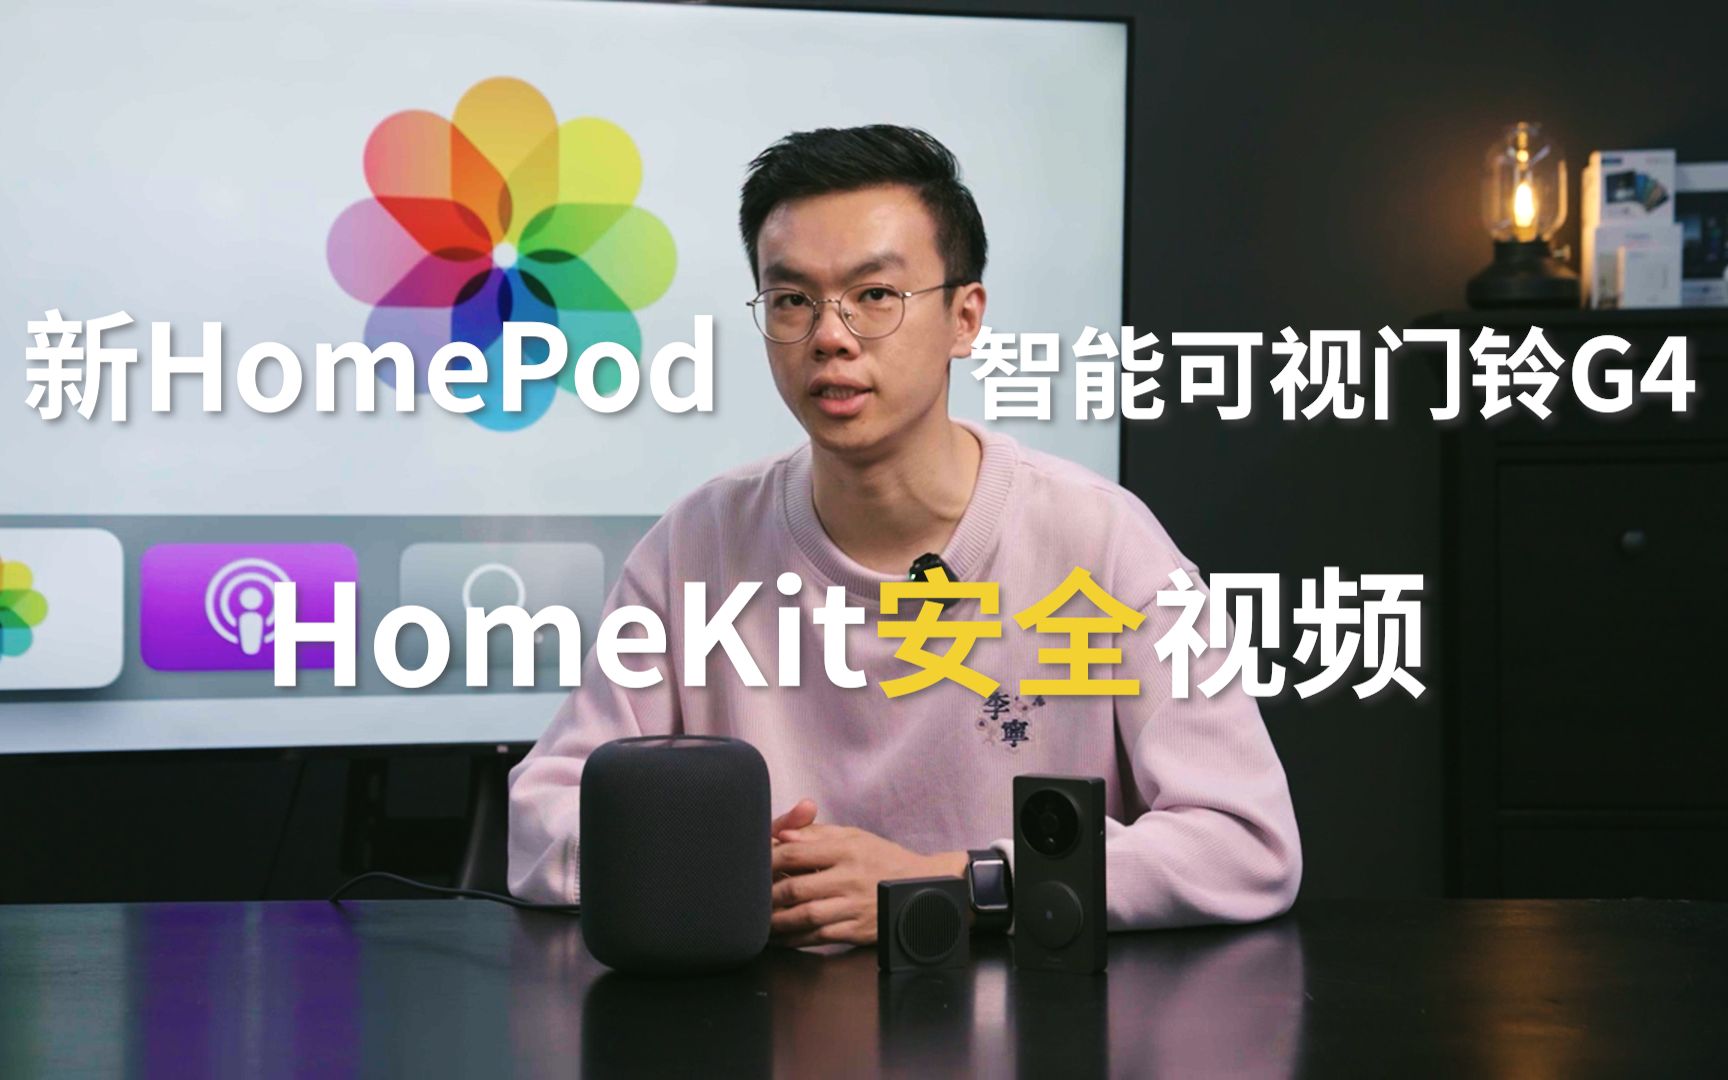 【苹果HomeKit】一起开箱全新HomePod&Aqara智能可视门铃G4，聊聊HomeKit的独特体验